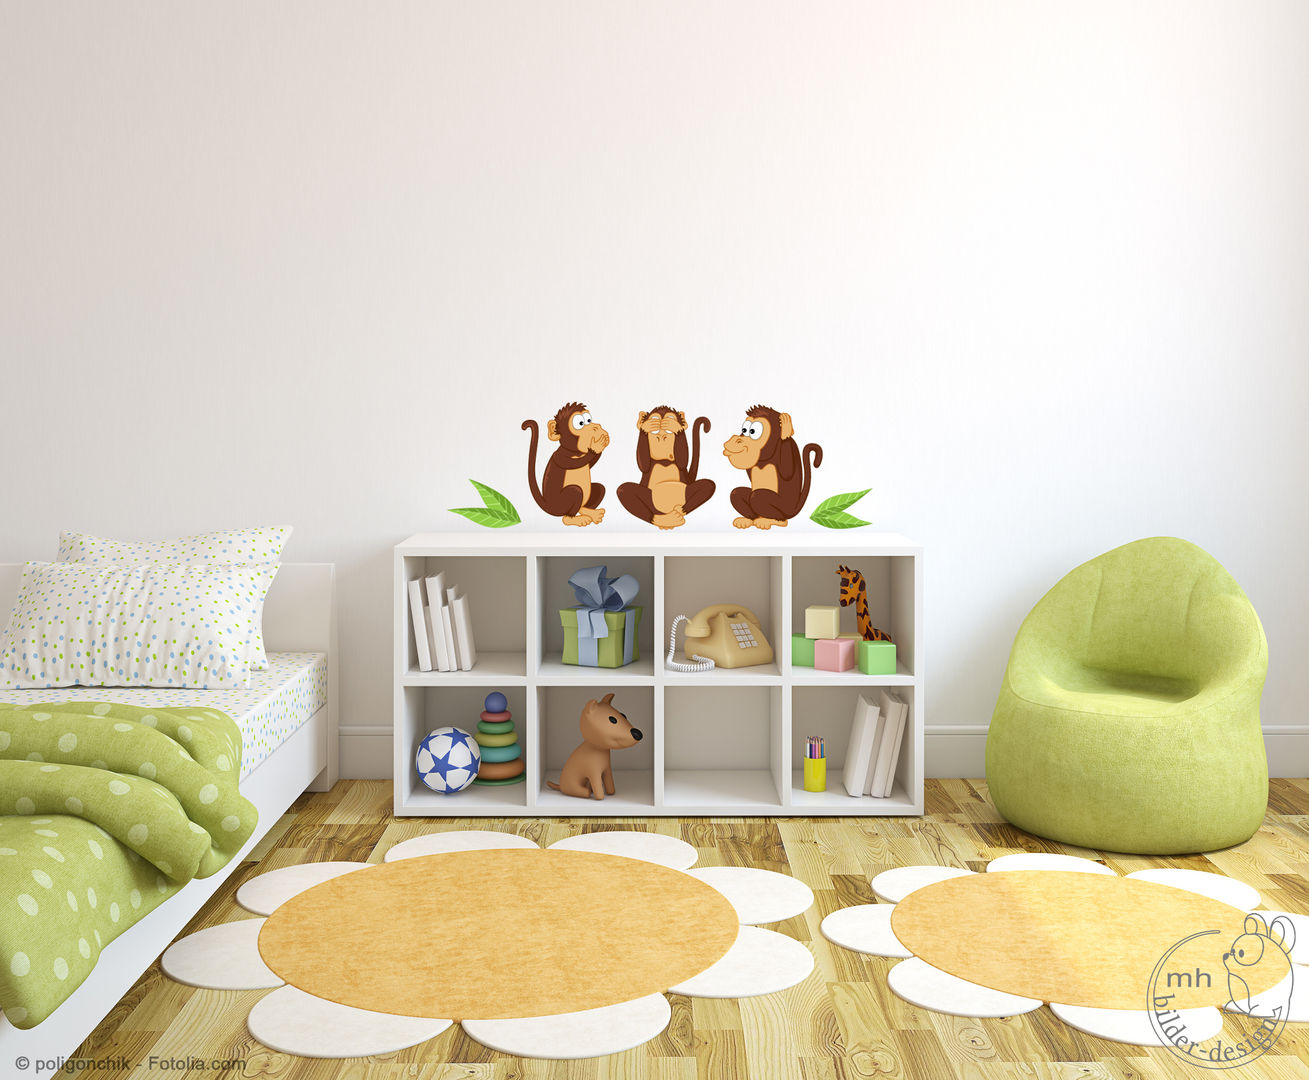 Wandtattoos - Dschungel im Kinderzimmer, MHBilder-Design MHBilder-Design Nursery/kid’s room مصنوعی Brown Accessories & decoration